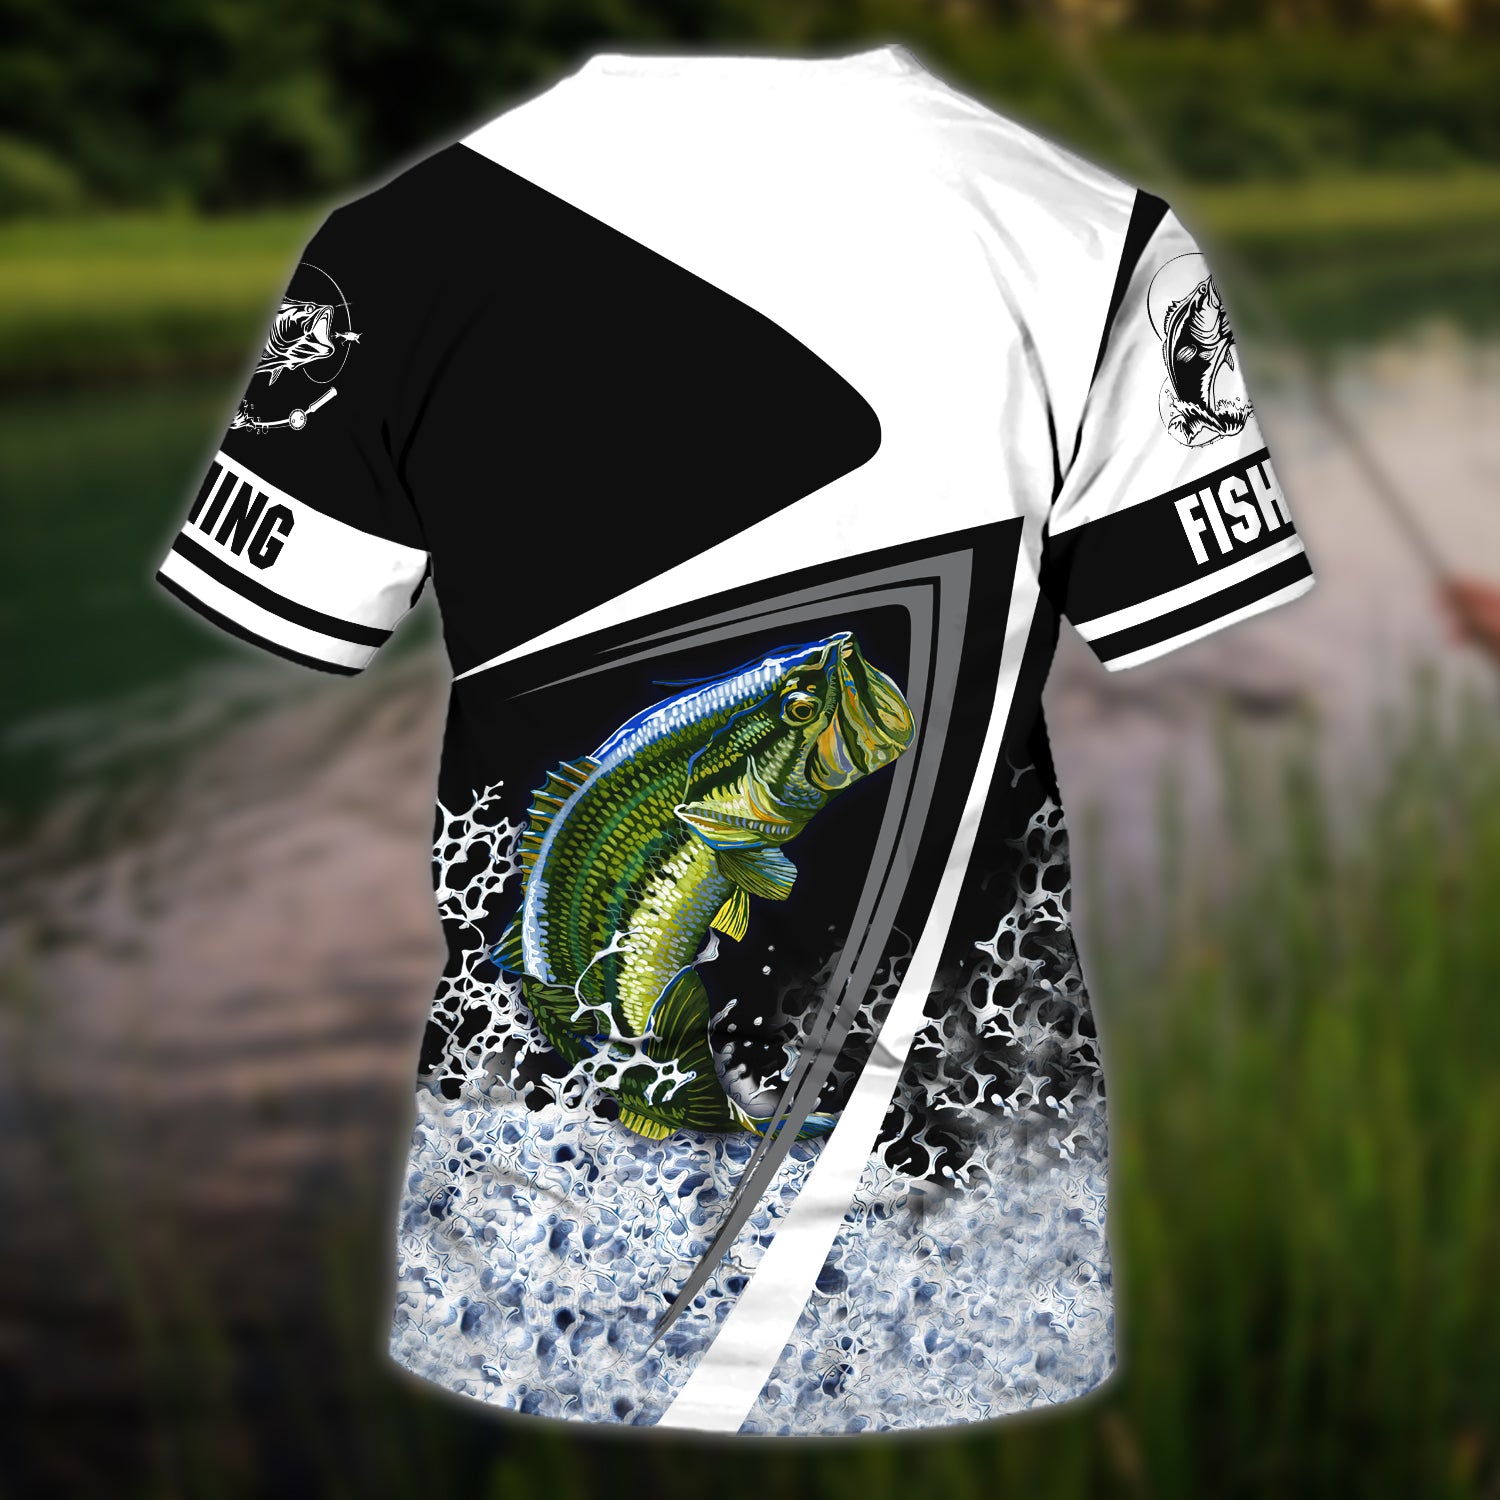 Bass Fishing custom name Tshirt - N94